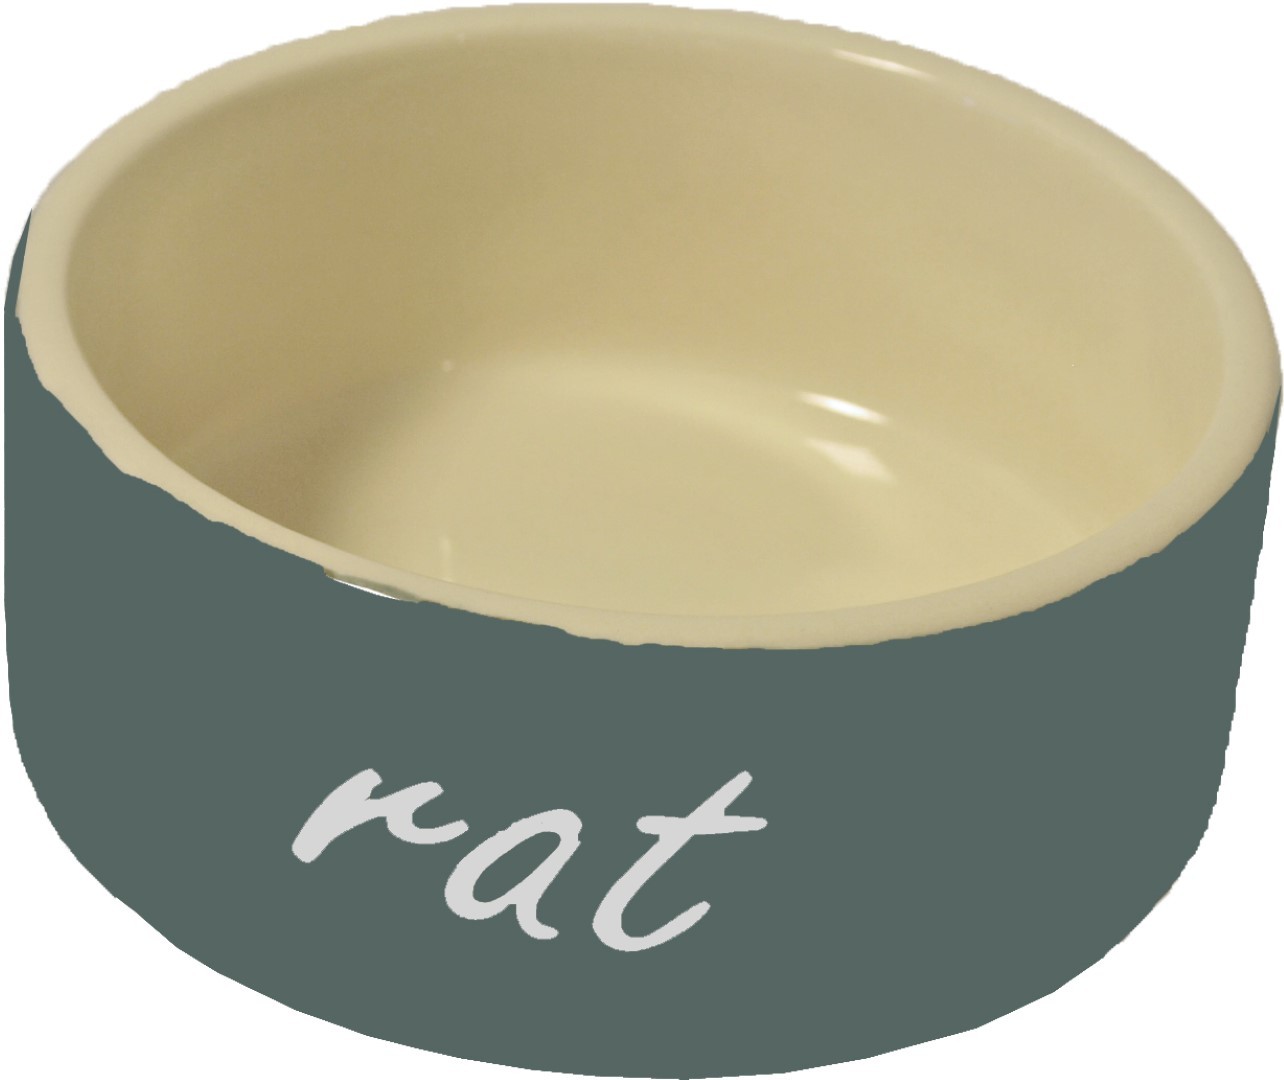 Ratten eetbak steen grijs diameter 10 cm